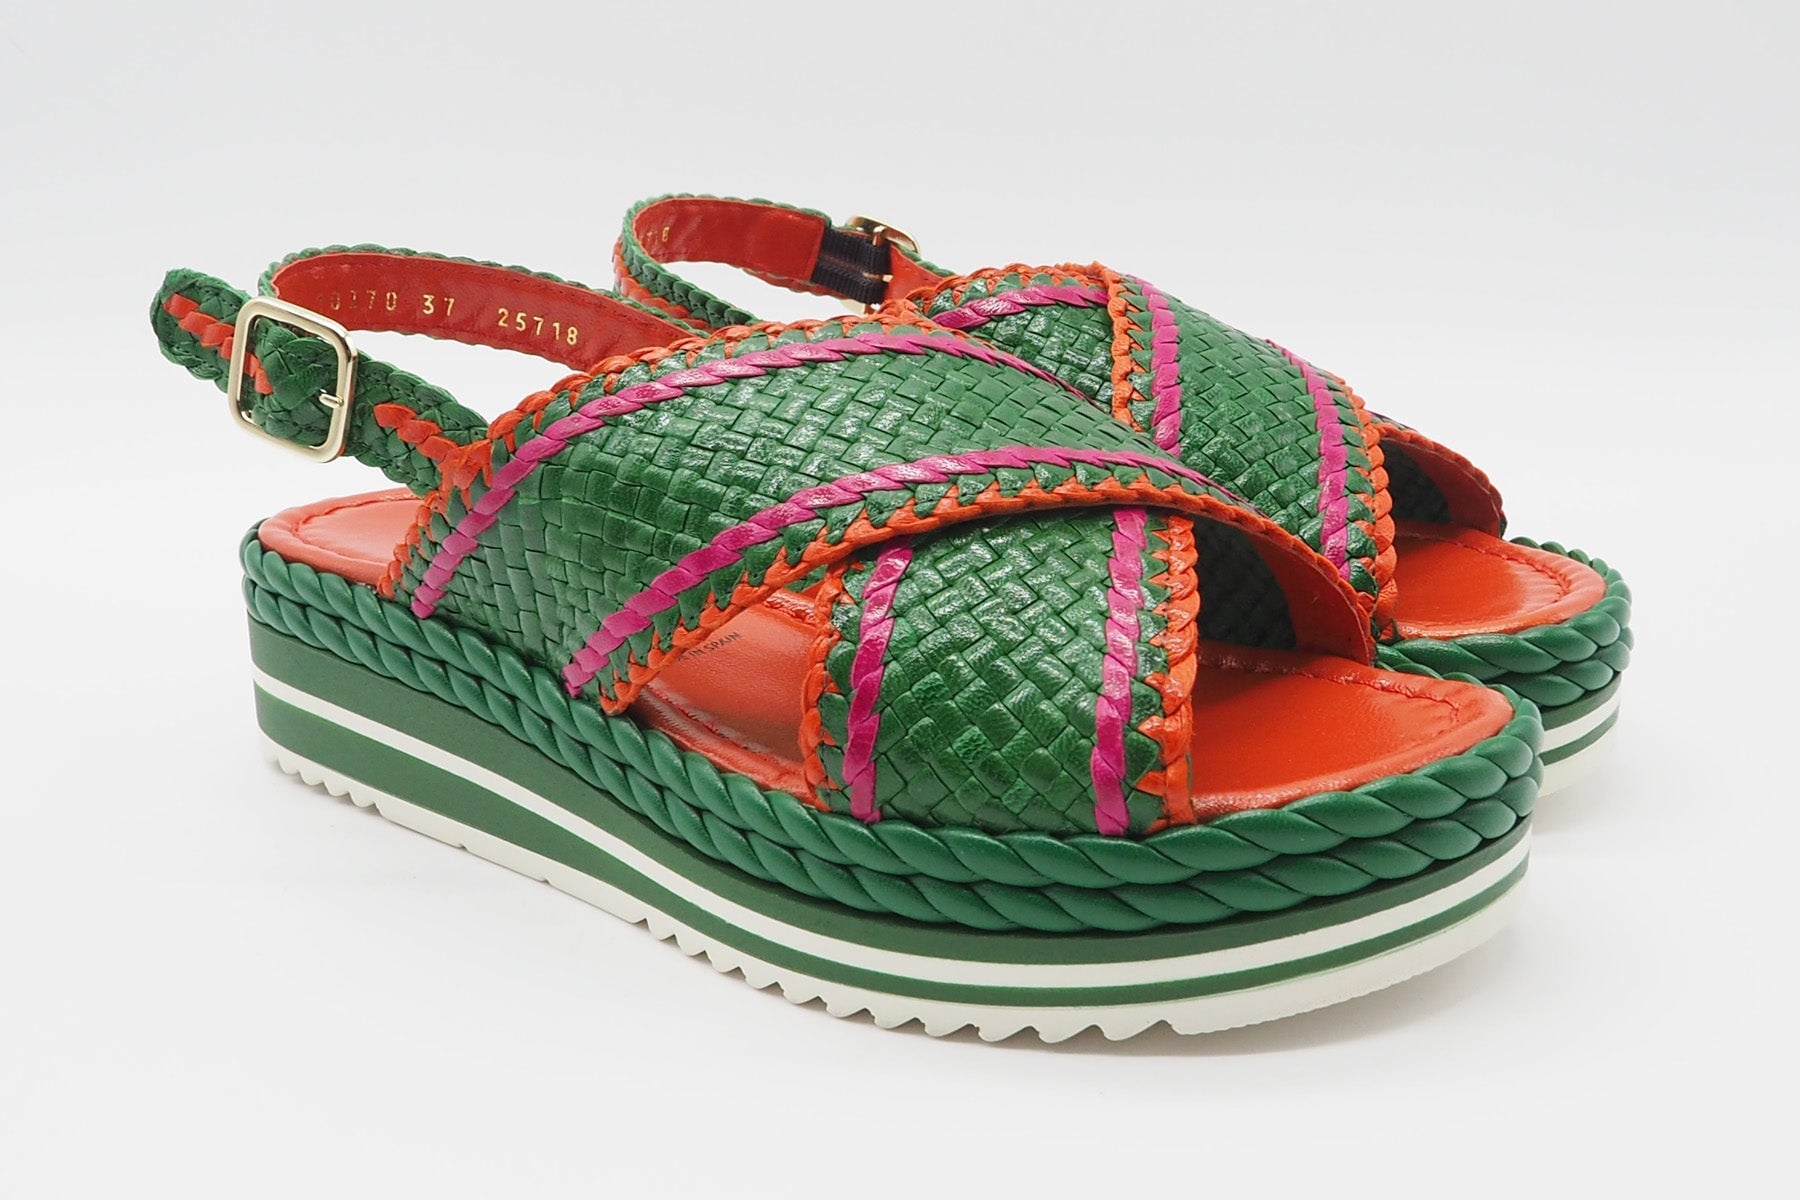 Feine Damen Sandale aus geflochtenem Leder in Grün, Orange & Pink - Absatz 4cm Damen Sandalen Pons Quintana 